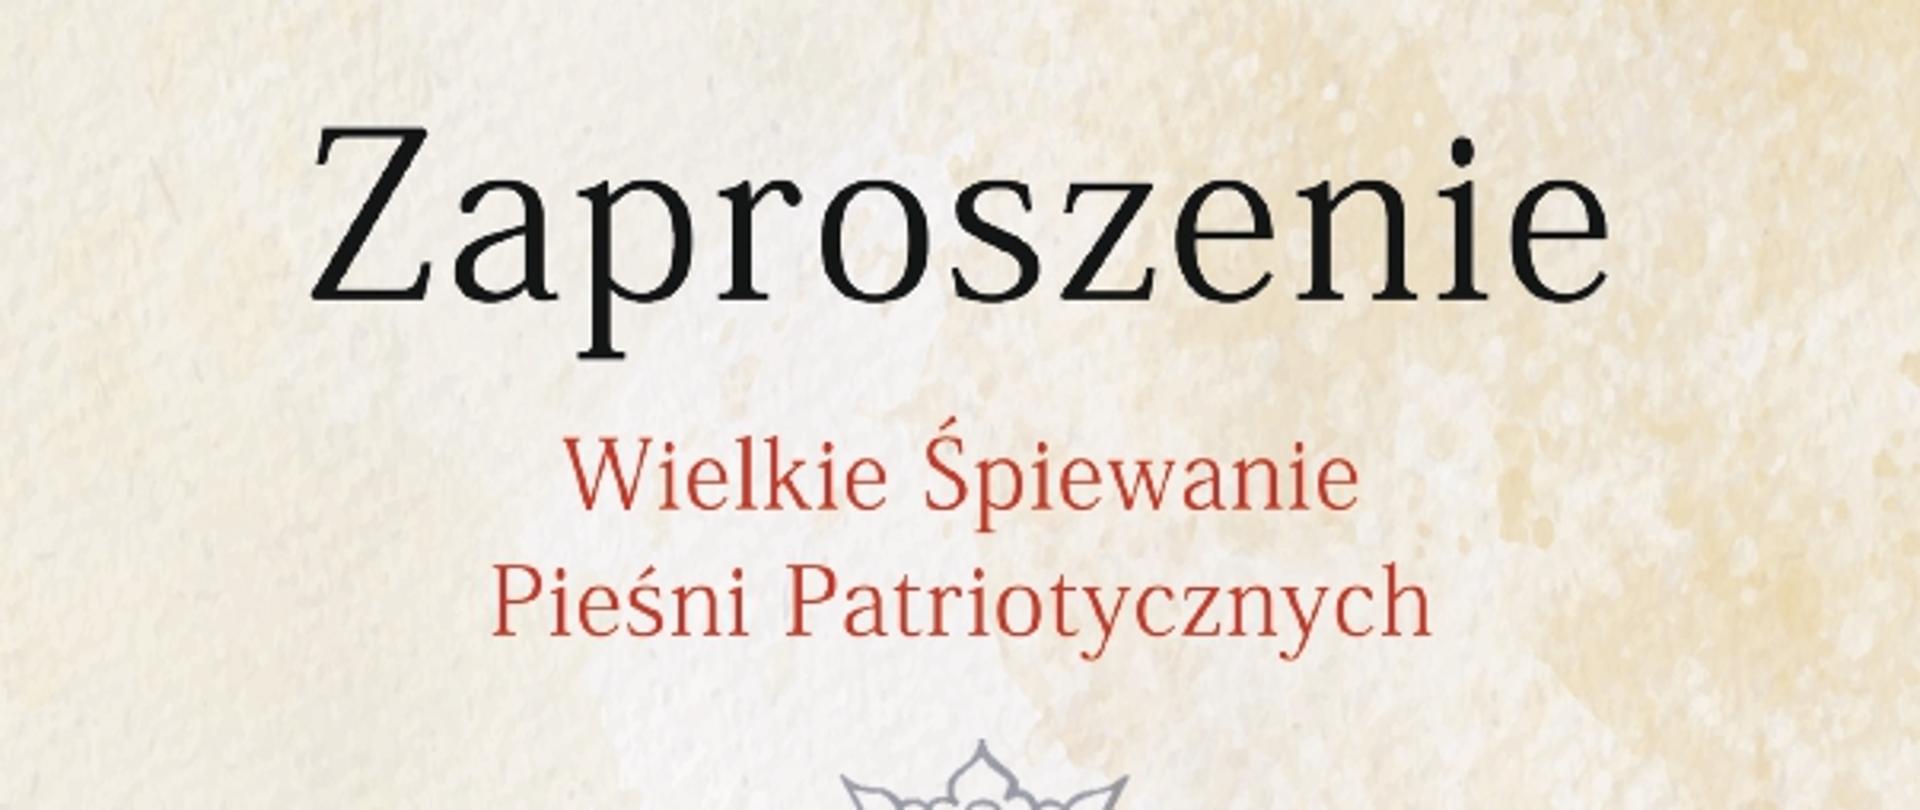 Front zaproszenie na Wielkie Śpiewanie Pieśni Patriotycznych, Orzeł Polski, napis niepodległa oraz logotypy organizatorów.